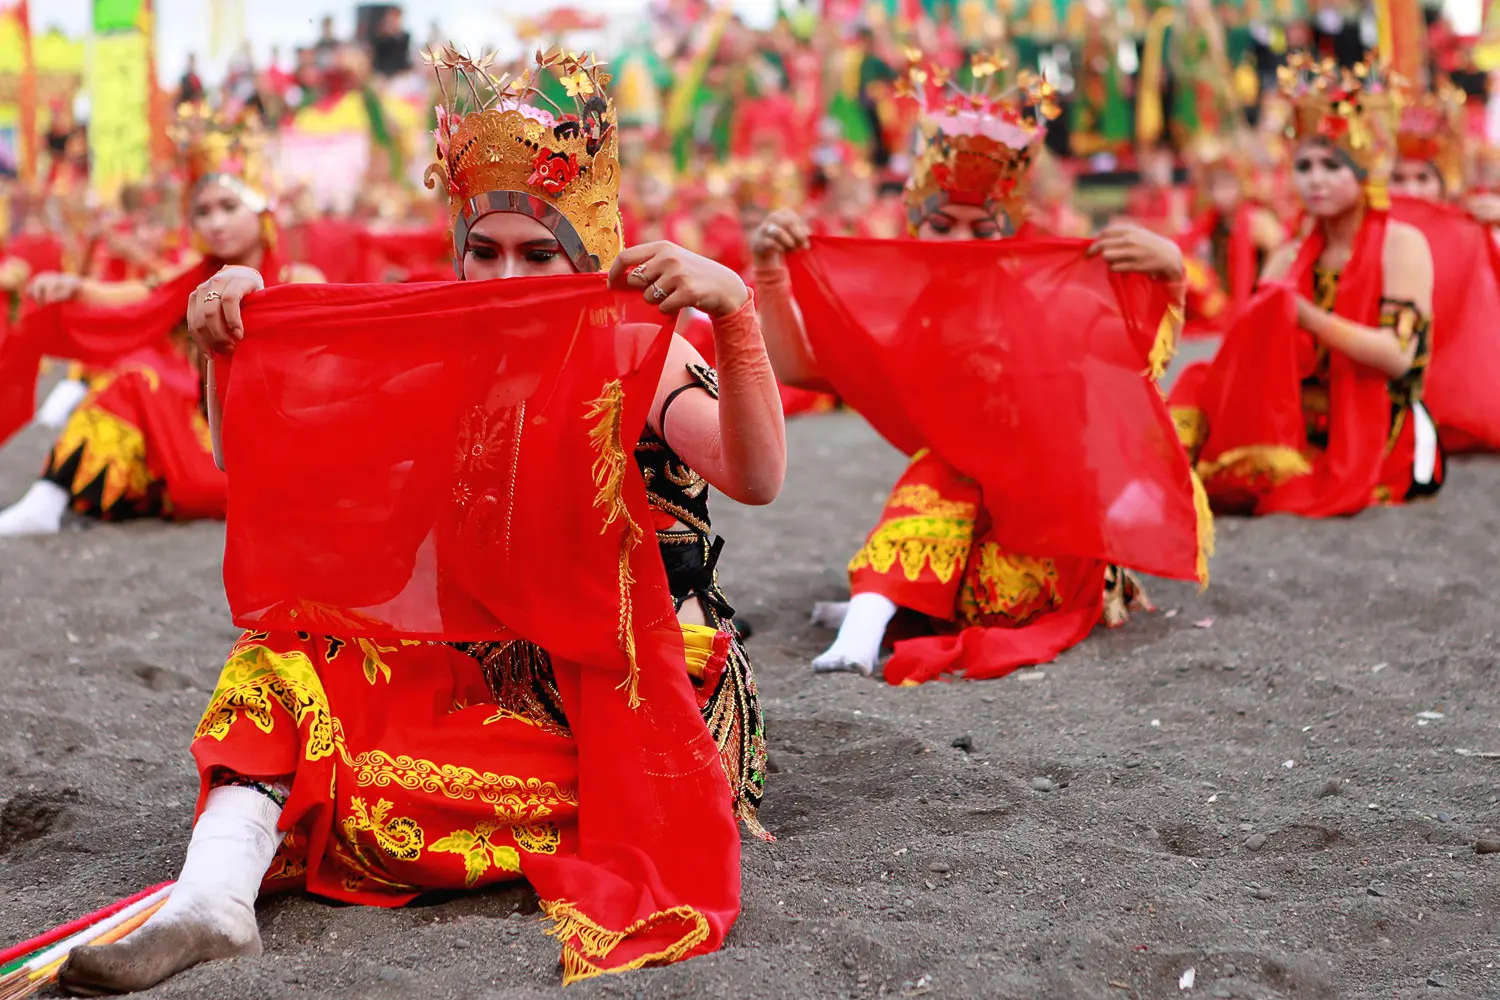 Festival Gandrung Sewu kembali digelar di bibir Pantai Boom, Banyuwangi, Jawa Timur, Minggu (8/10/2017), menyajikan penampilan kolosal 1.286 penari. (Liputan6.com/Dian Kurniawan)